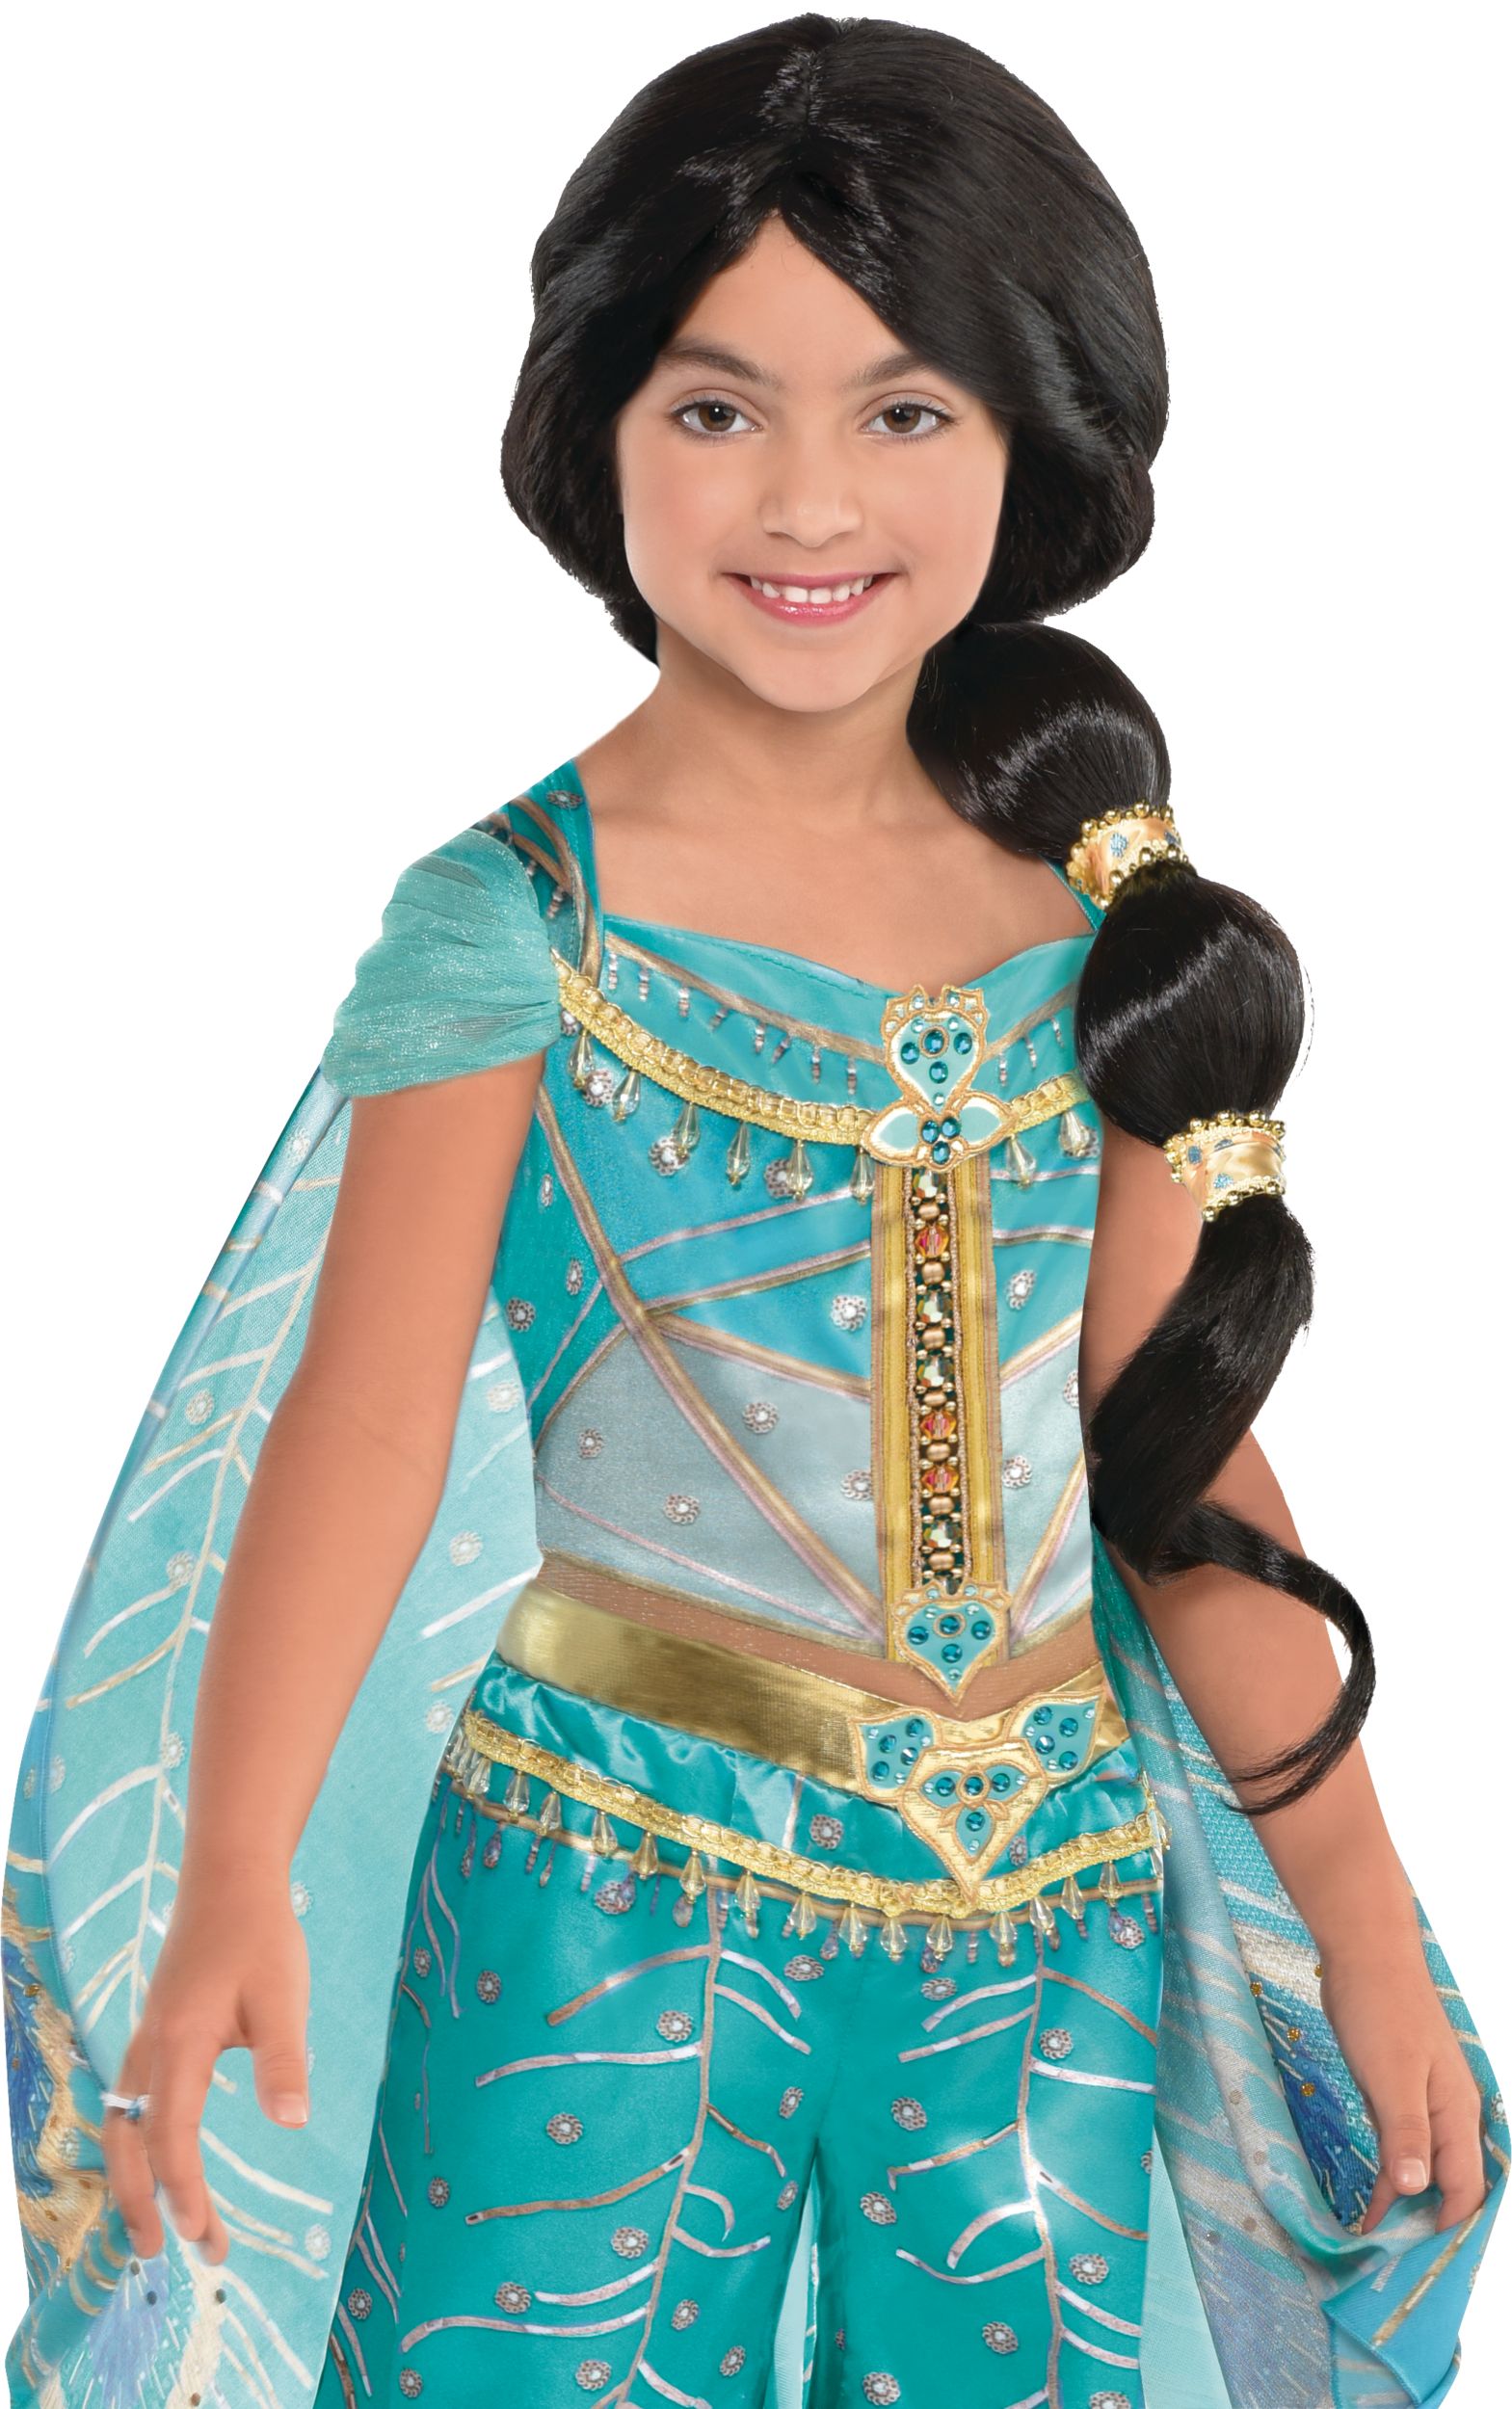 Jasmine Dress Princess Jasmine Outfit Aladdin Princess 